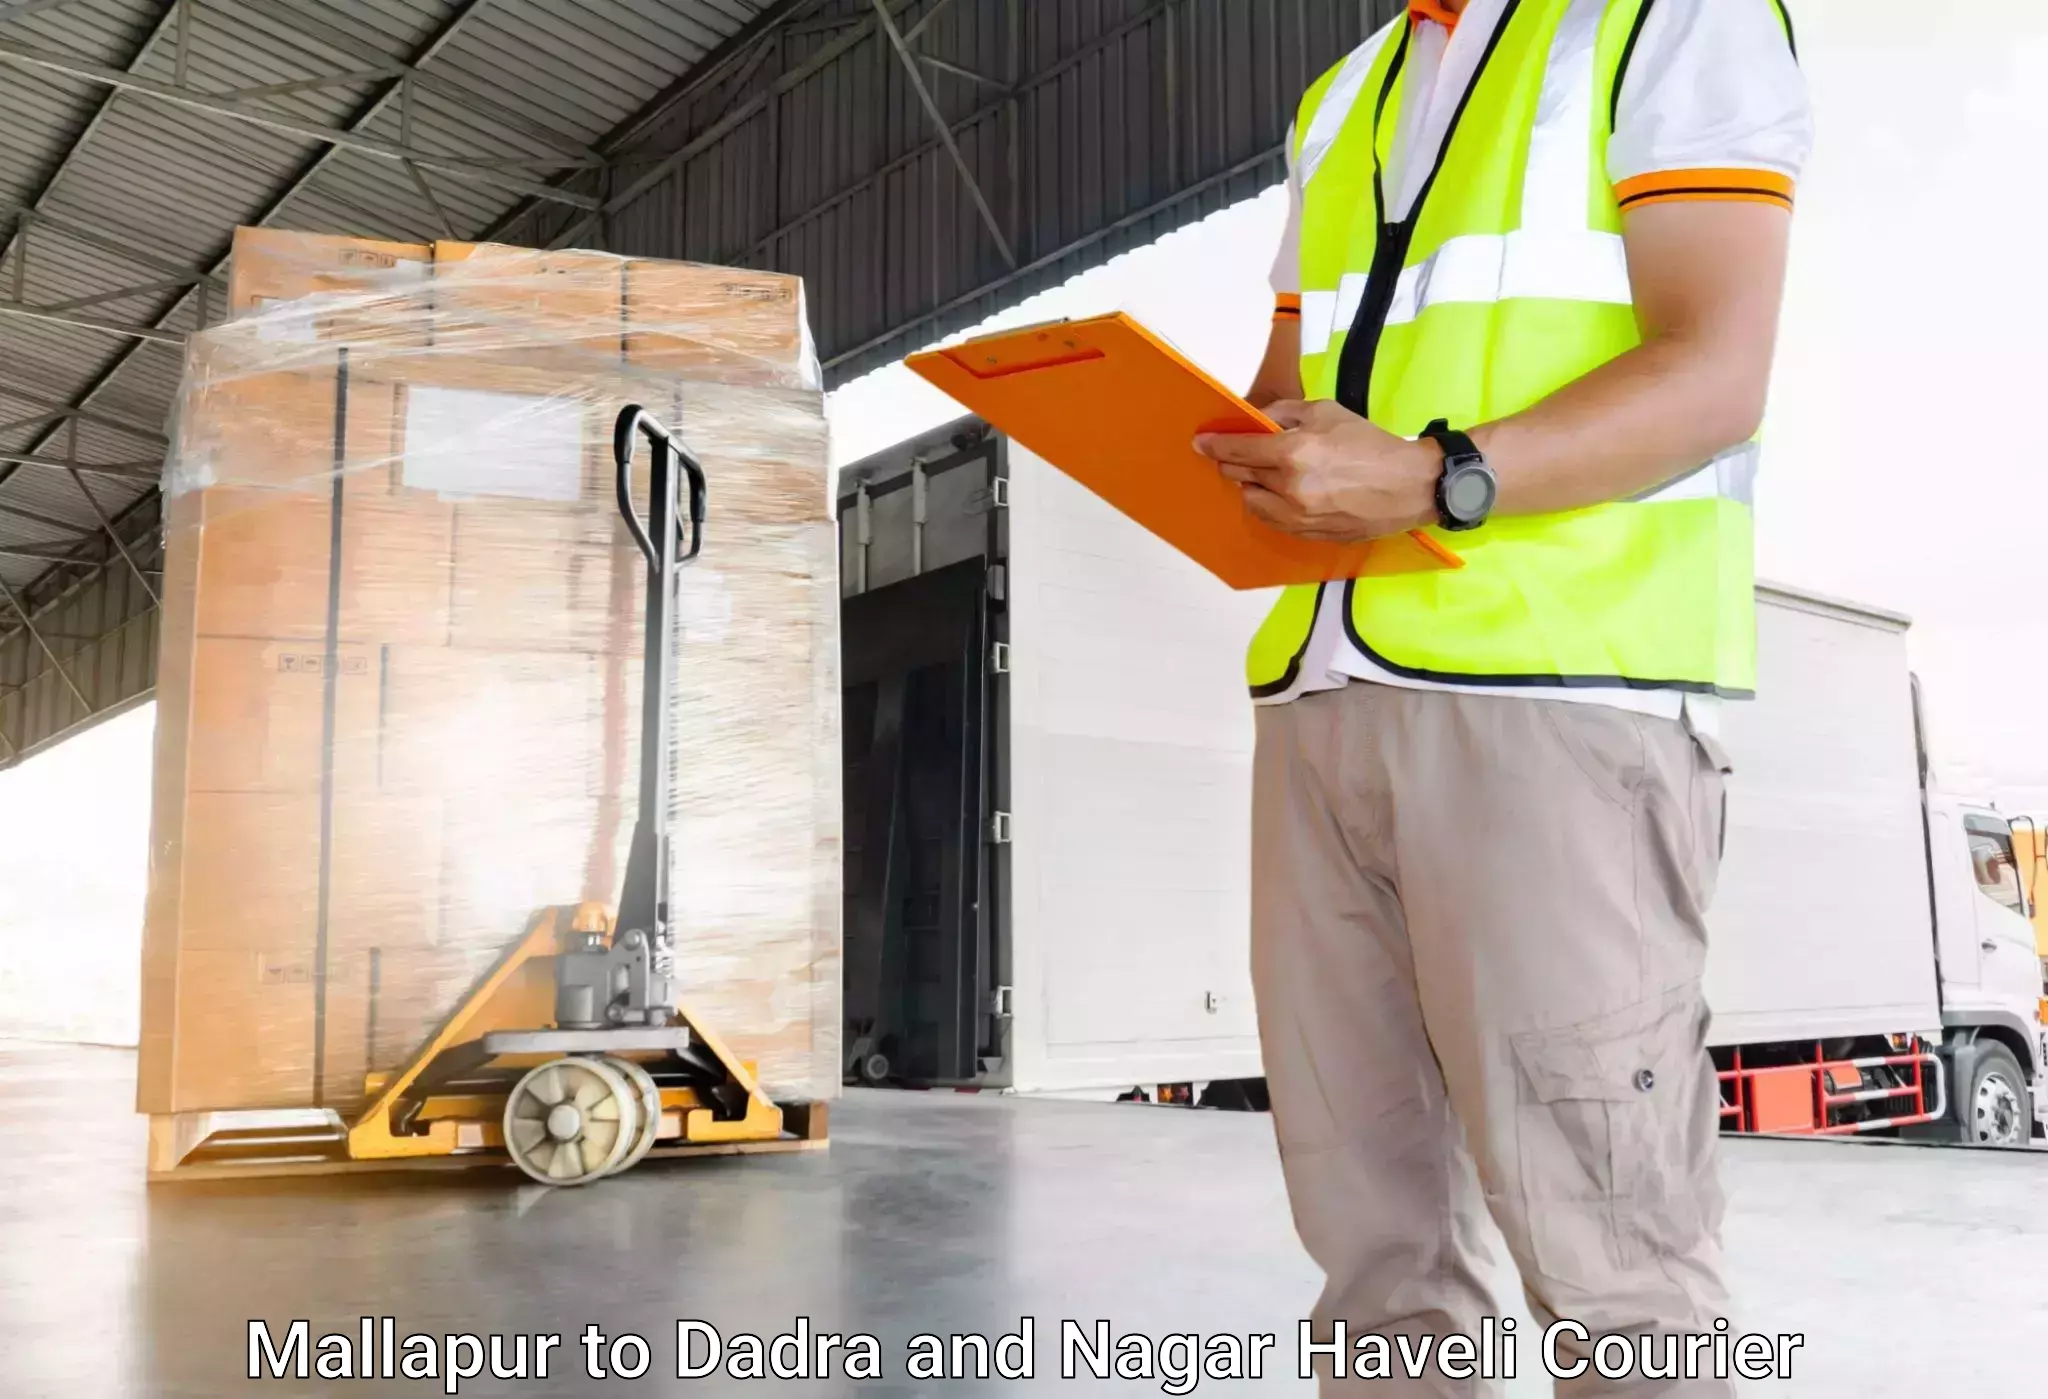 Reliable baggage delivery in Mallapur to Silvassa